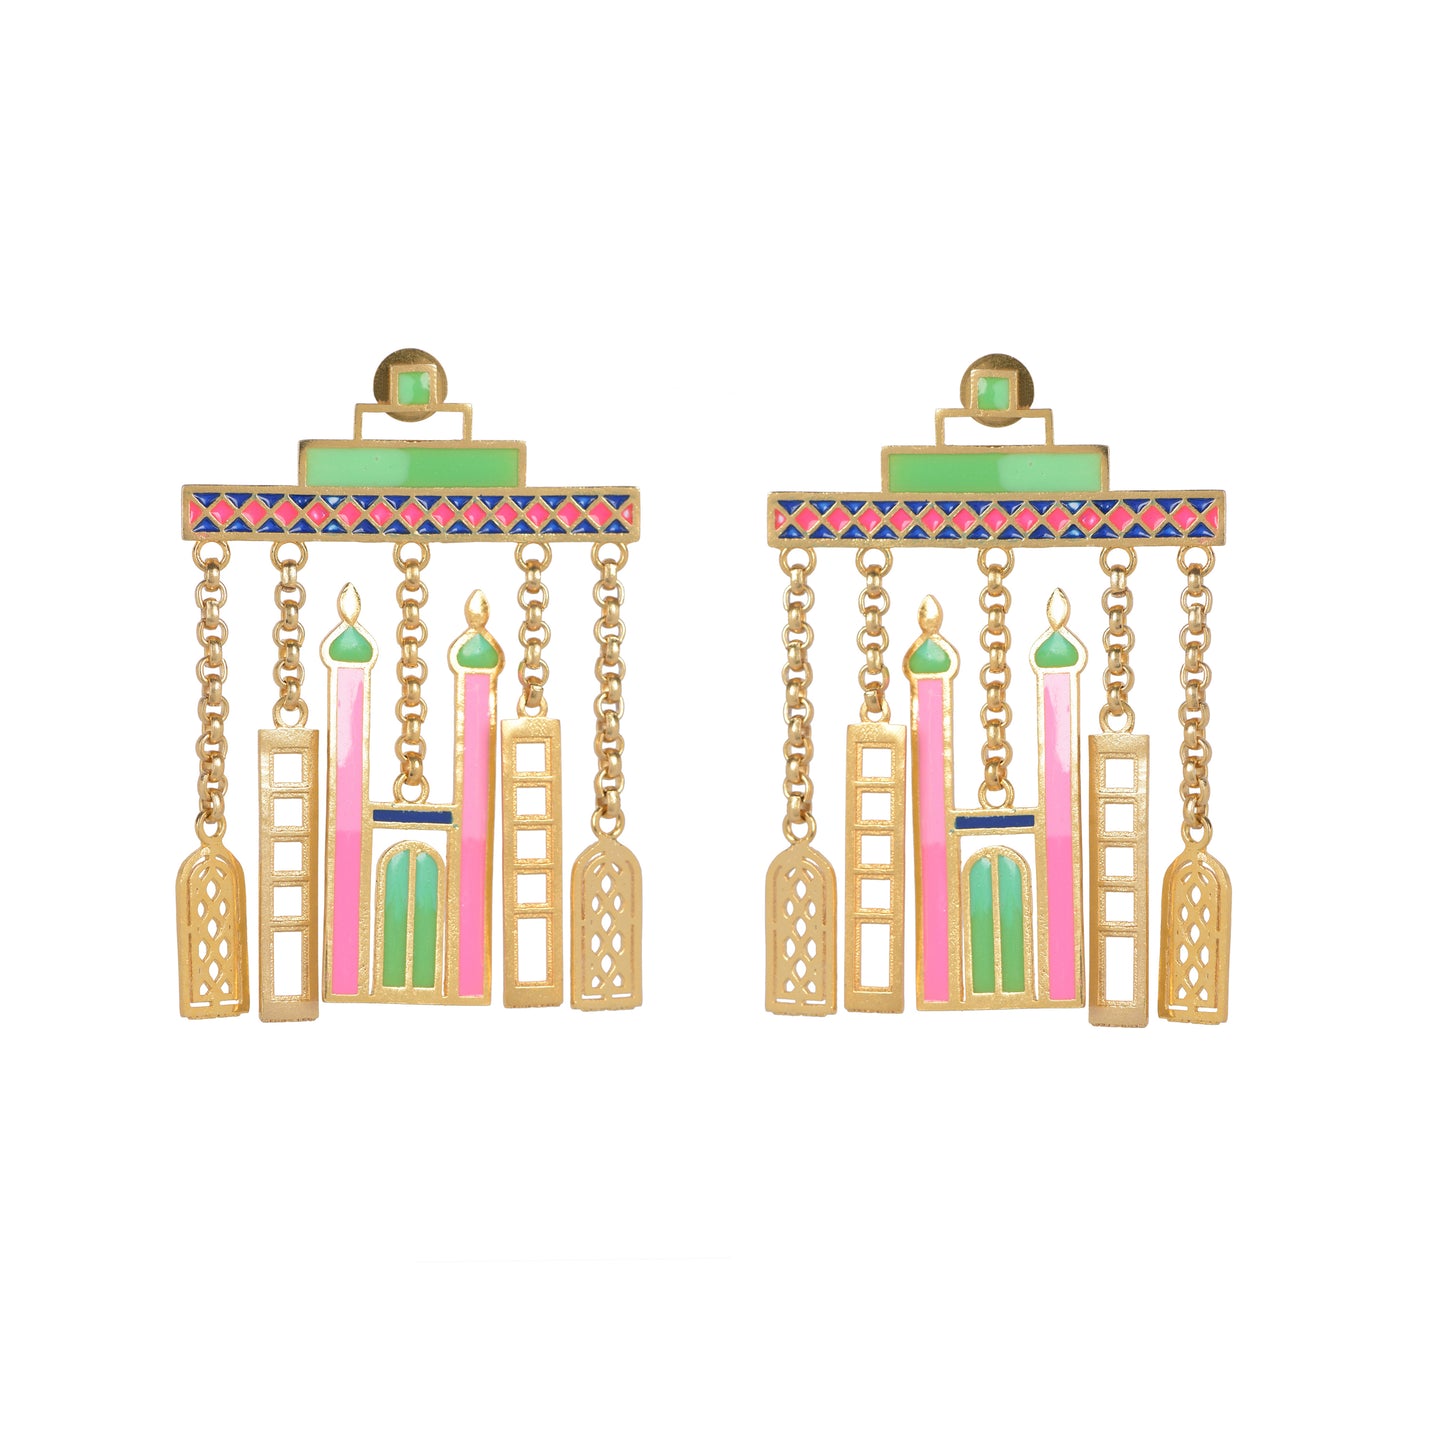 The grand skyline earrings